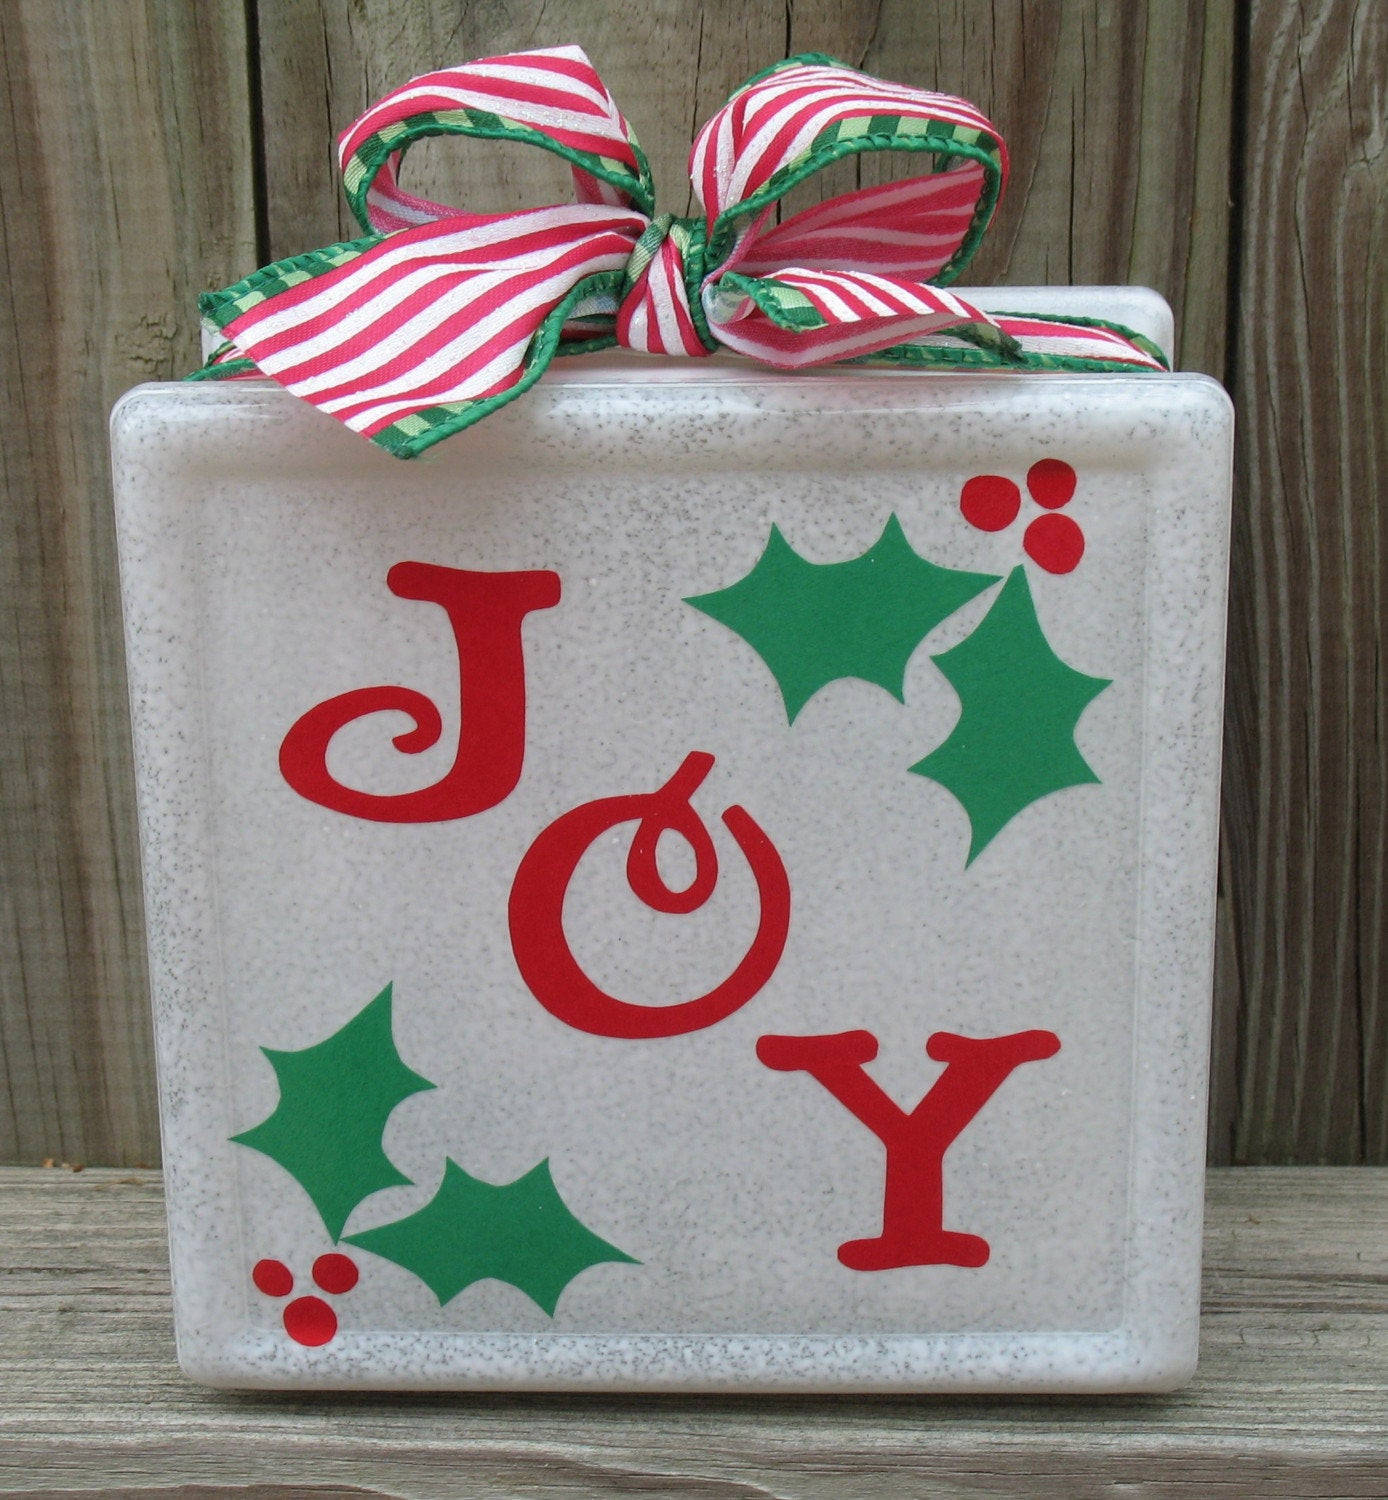 Best ideas about Pinterest Christmas Craft Ideas
. Save or Pin Pinterest Crafts Christmas Now.